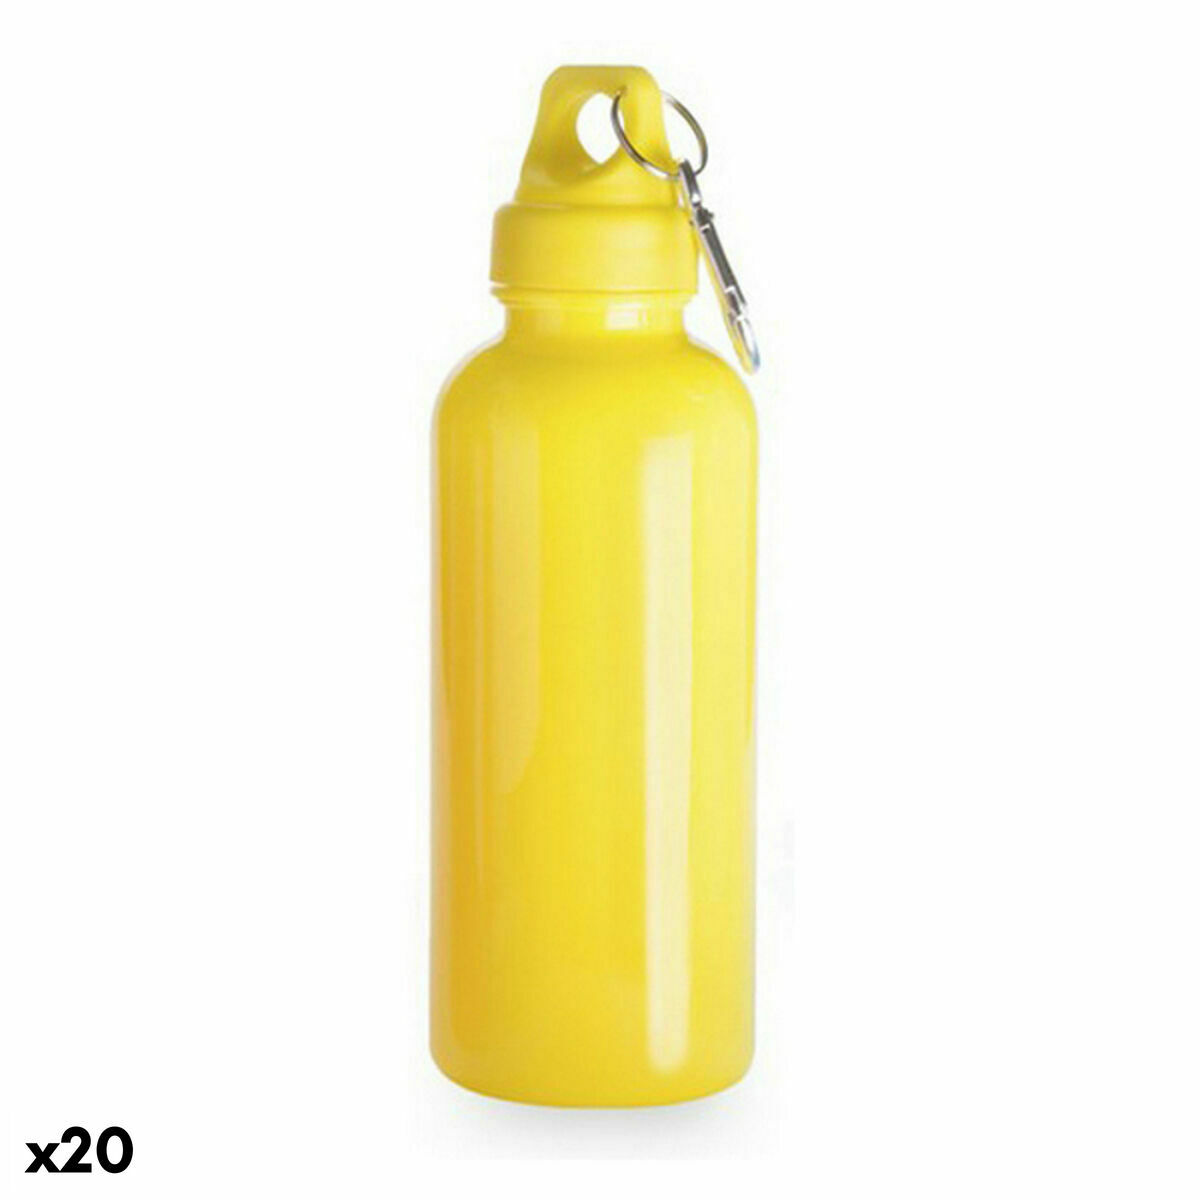 Желтая бутылочка. Желтая бутылка. Желтая спортивная бутылка. Желтая пластиковая бутылка. Бутылка из полистирола.